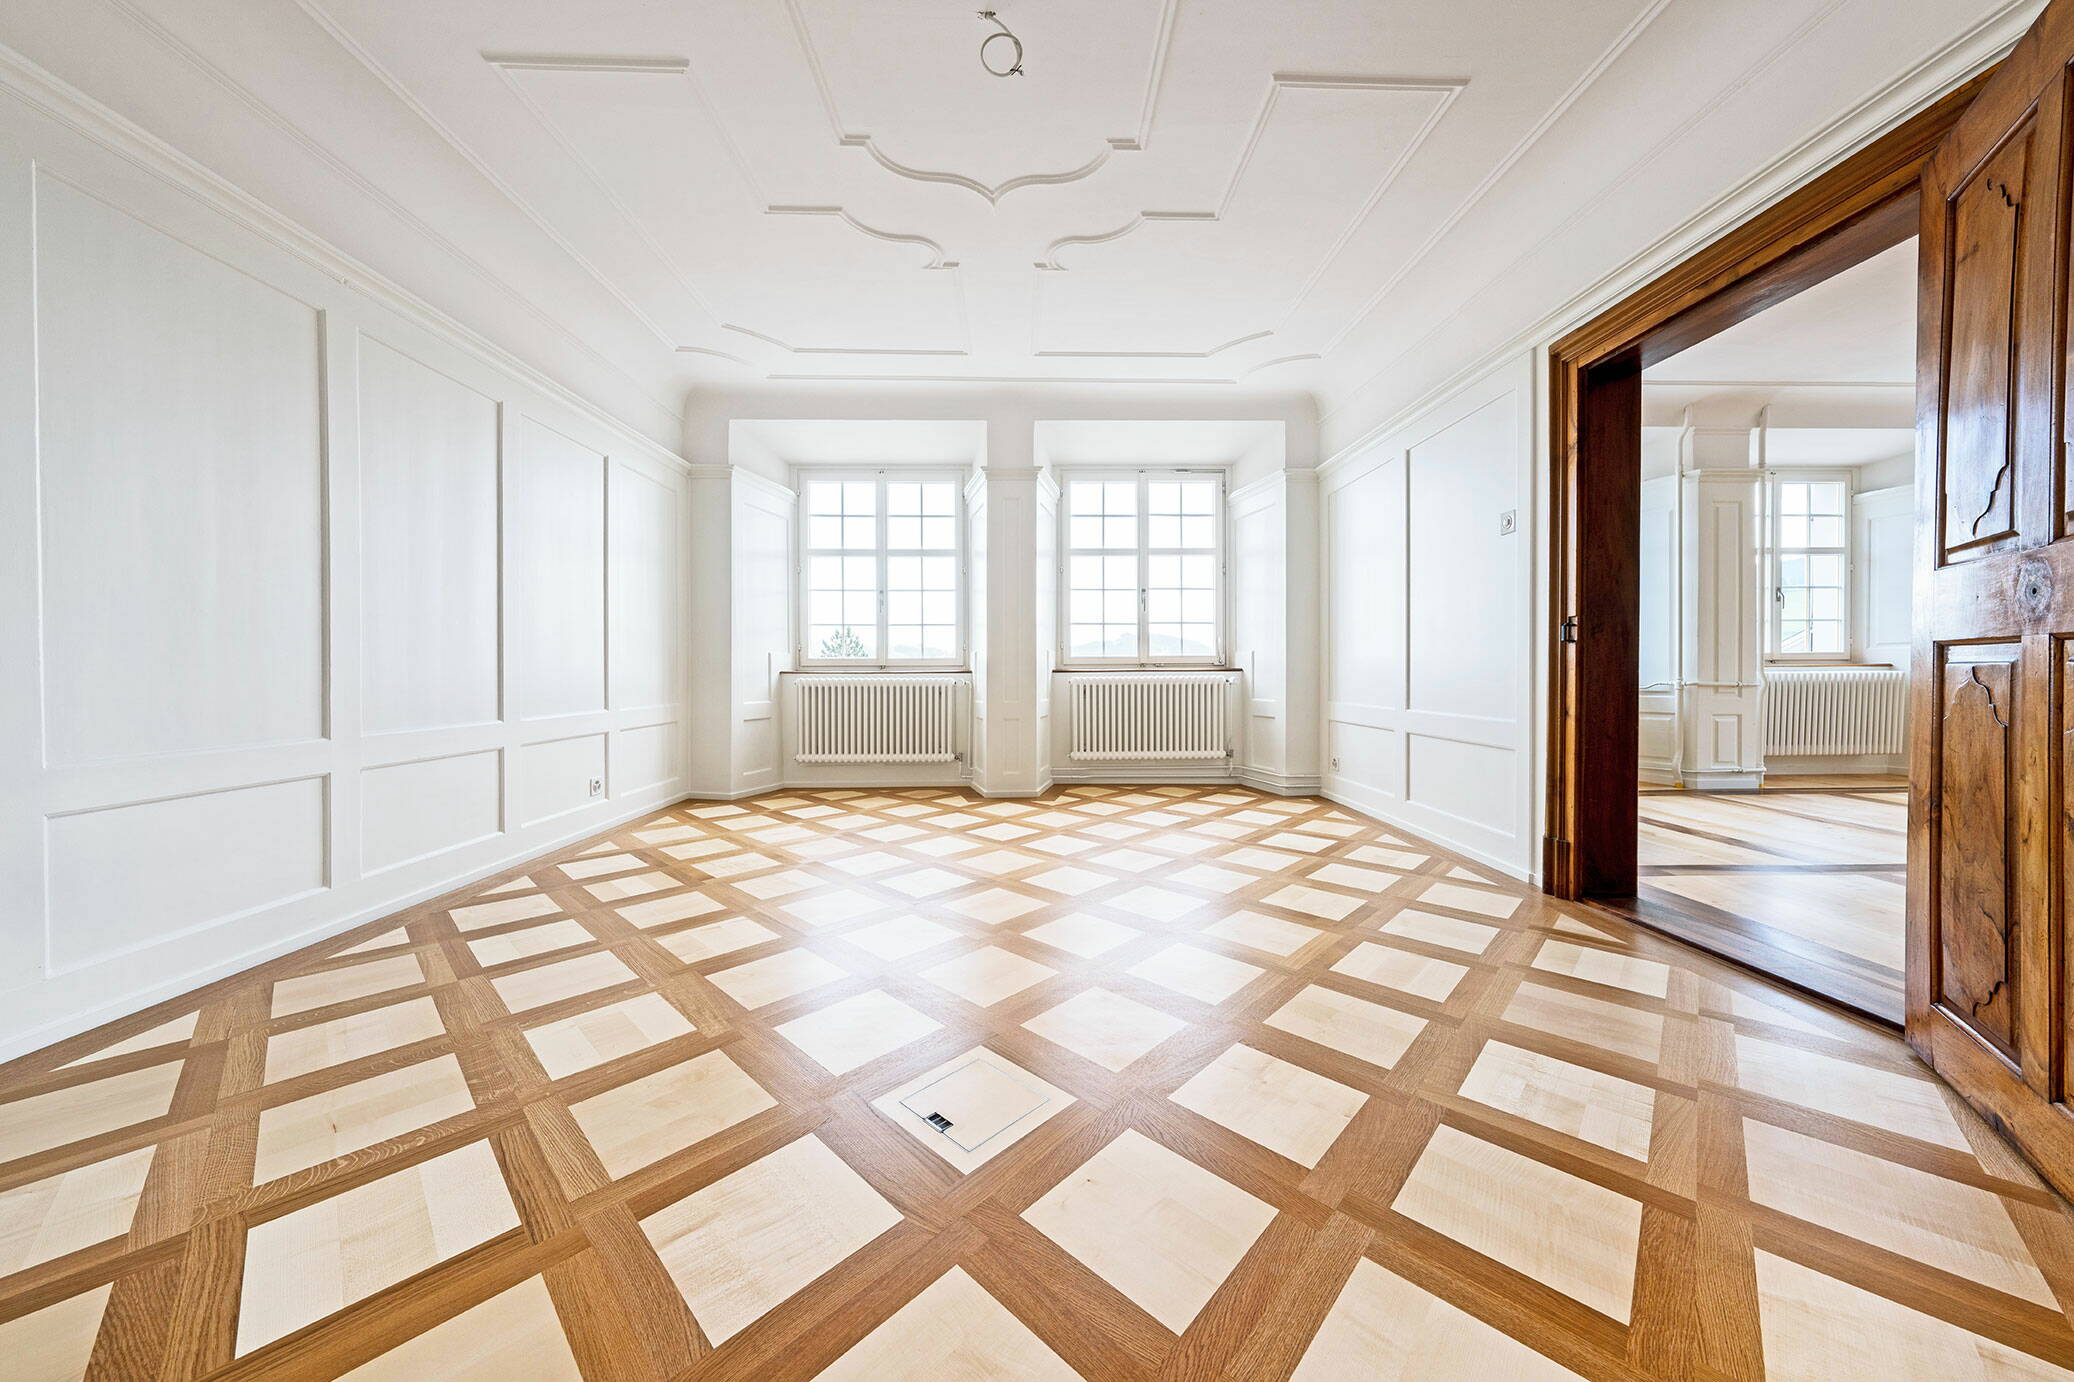 Zoom: Sicht in einen lichtdurchfluteten Raum mit Holzparkett und Stuckaturen an der Decke.